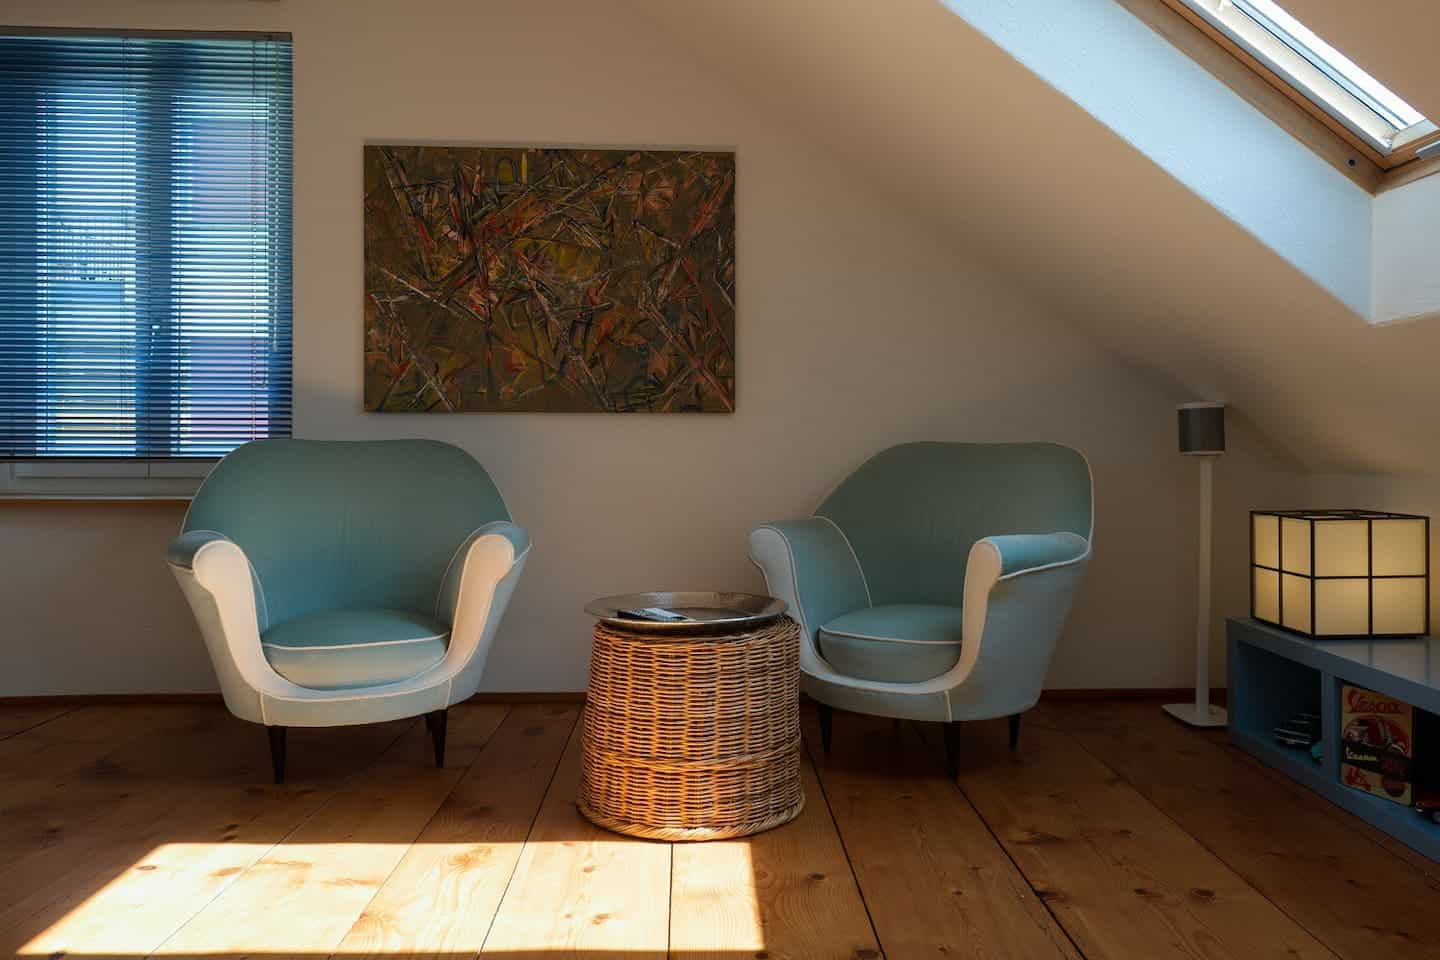 Image of Airbnb rental in Zürich Switzerland